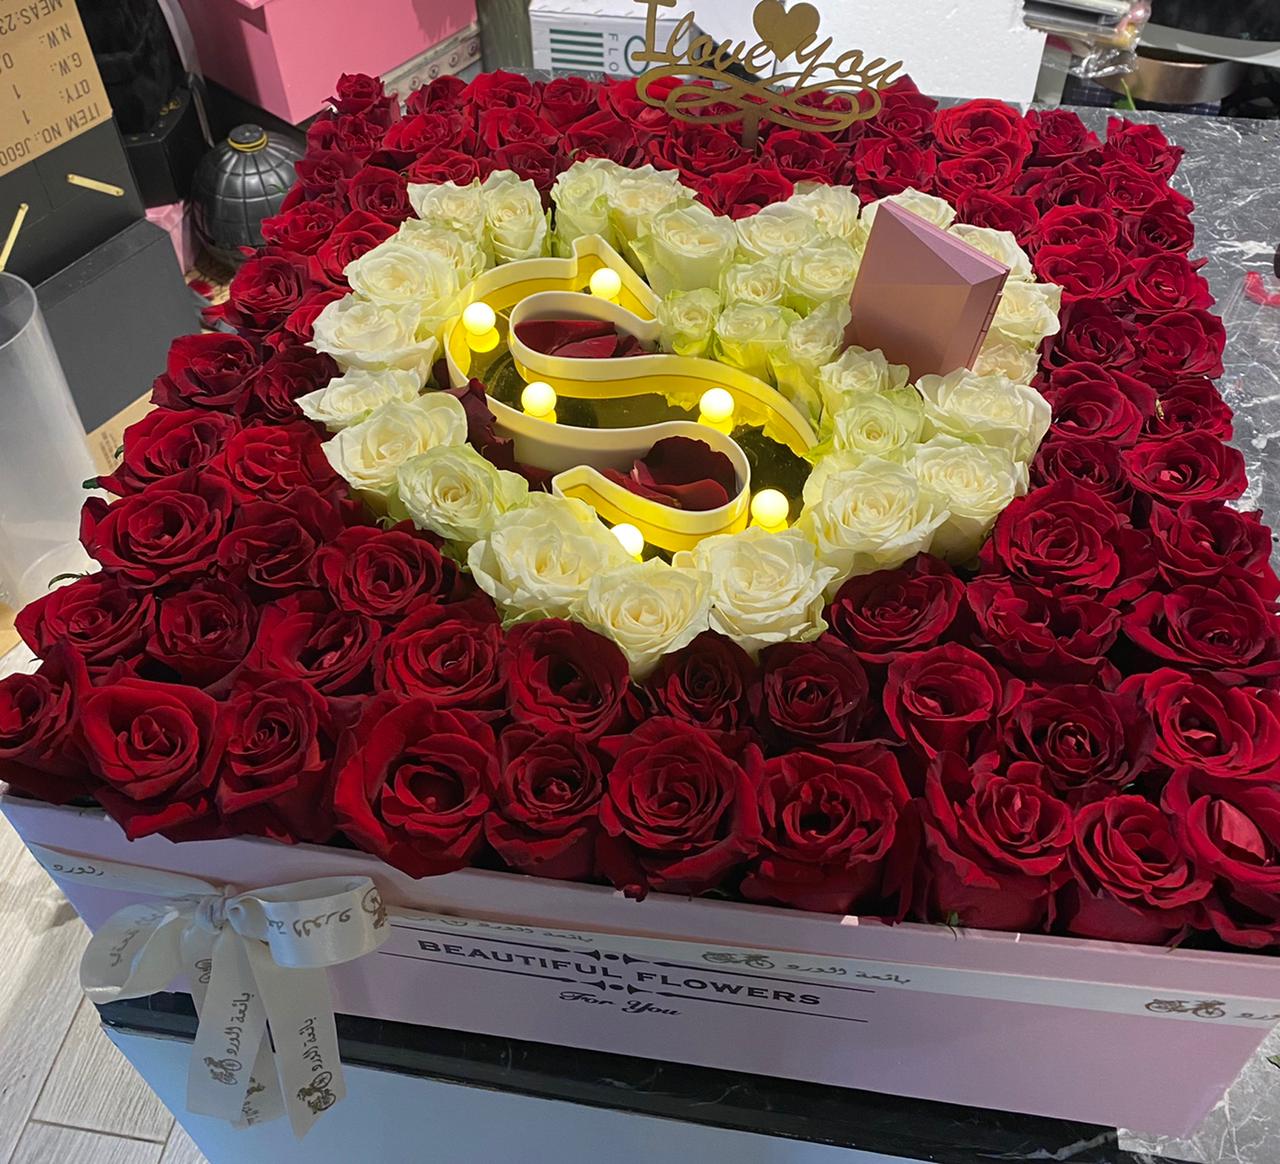 Big Flower Box with Letter - Bae3at Elward flower shop 